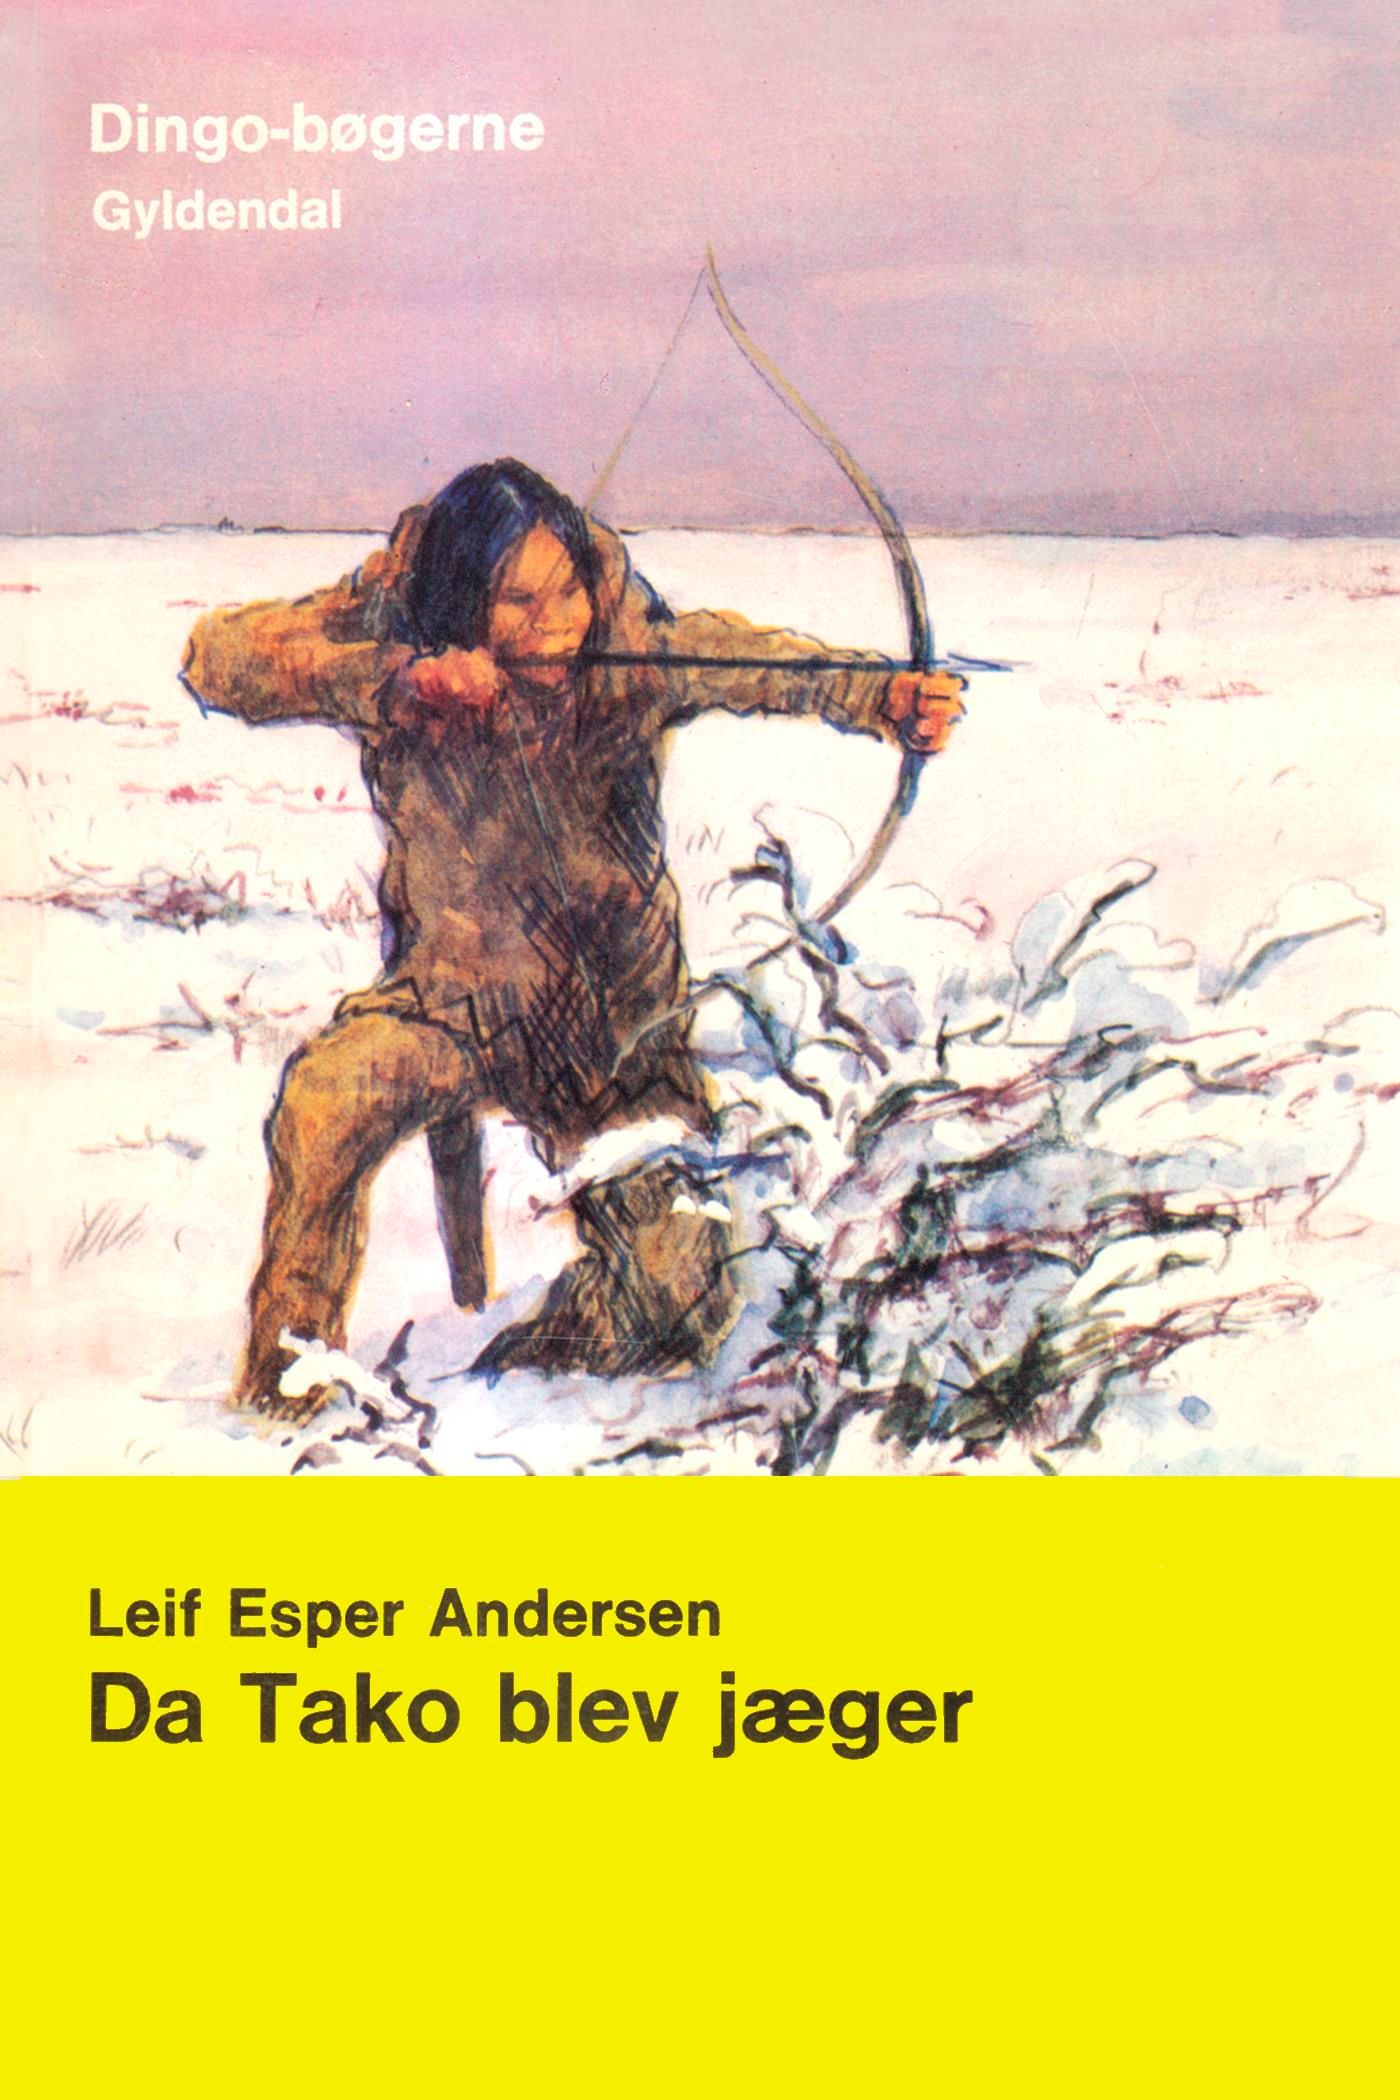 Da Tako blev jæger, e-bog af Leif Esper Andersen